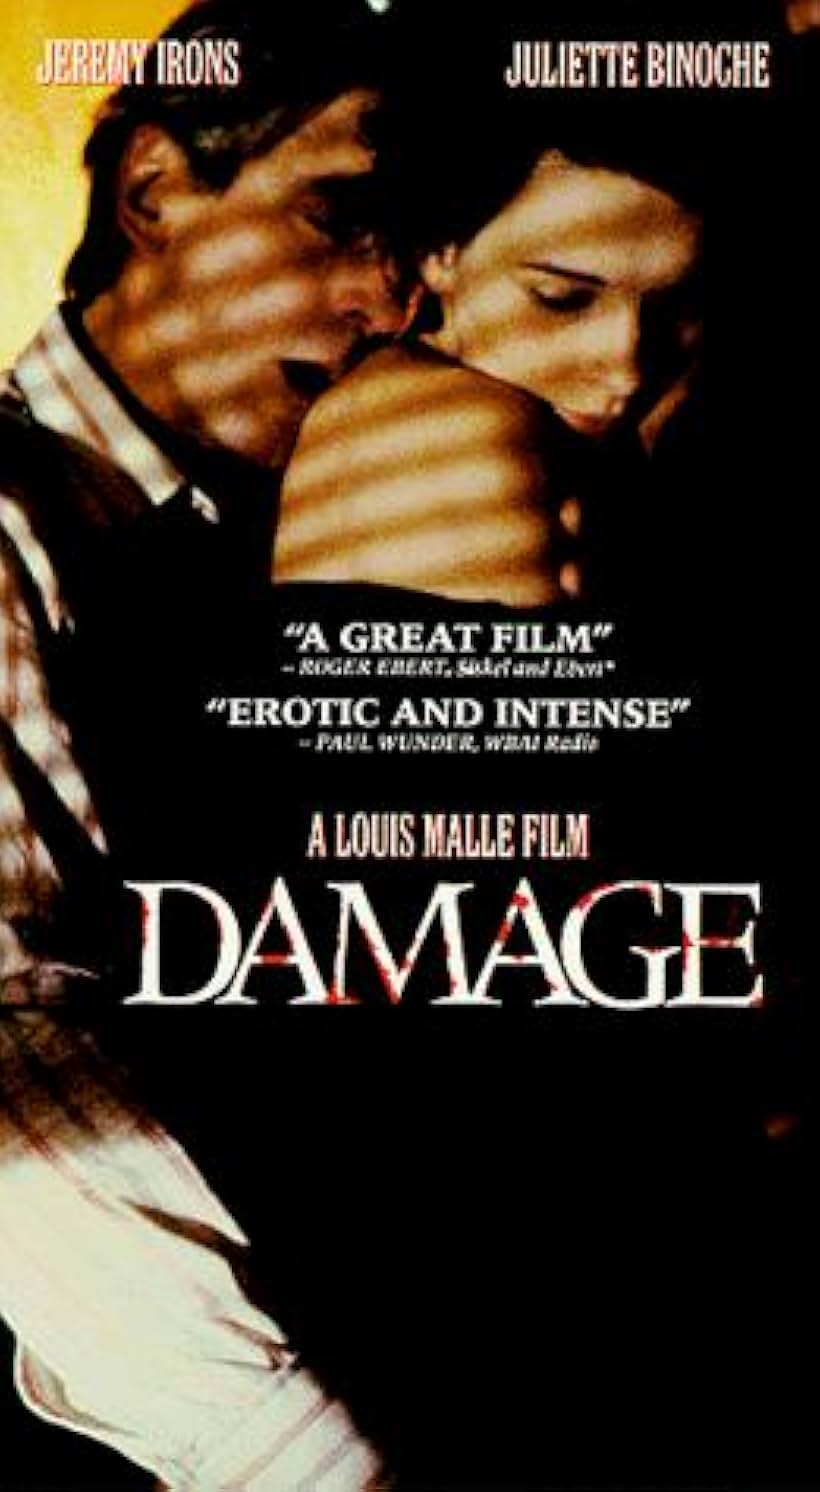 Juliette Binoche and Jeremy Irons in Damage (1992)